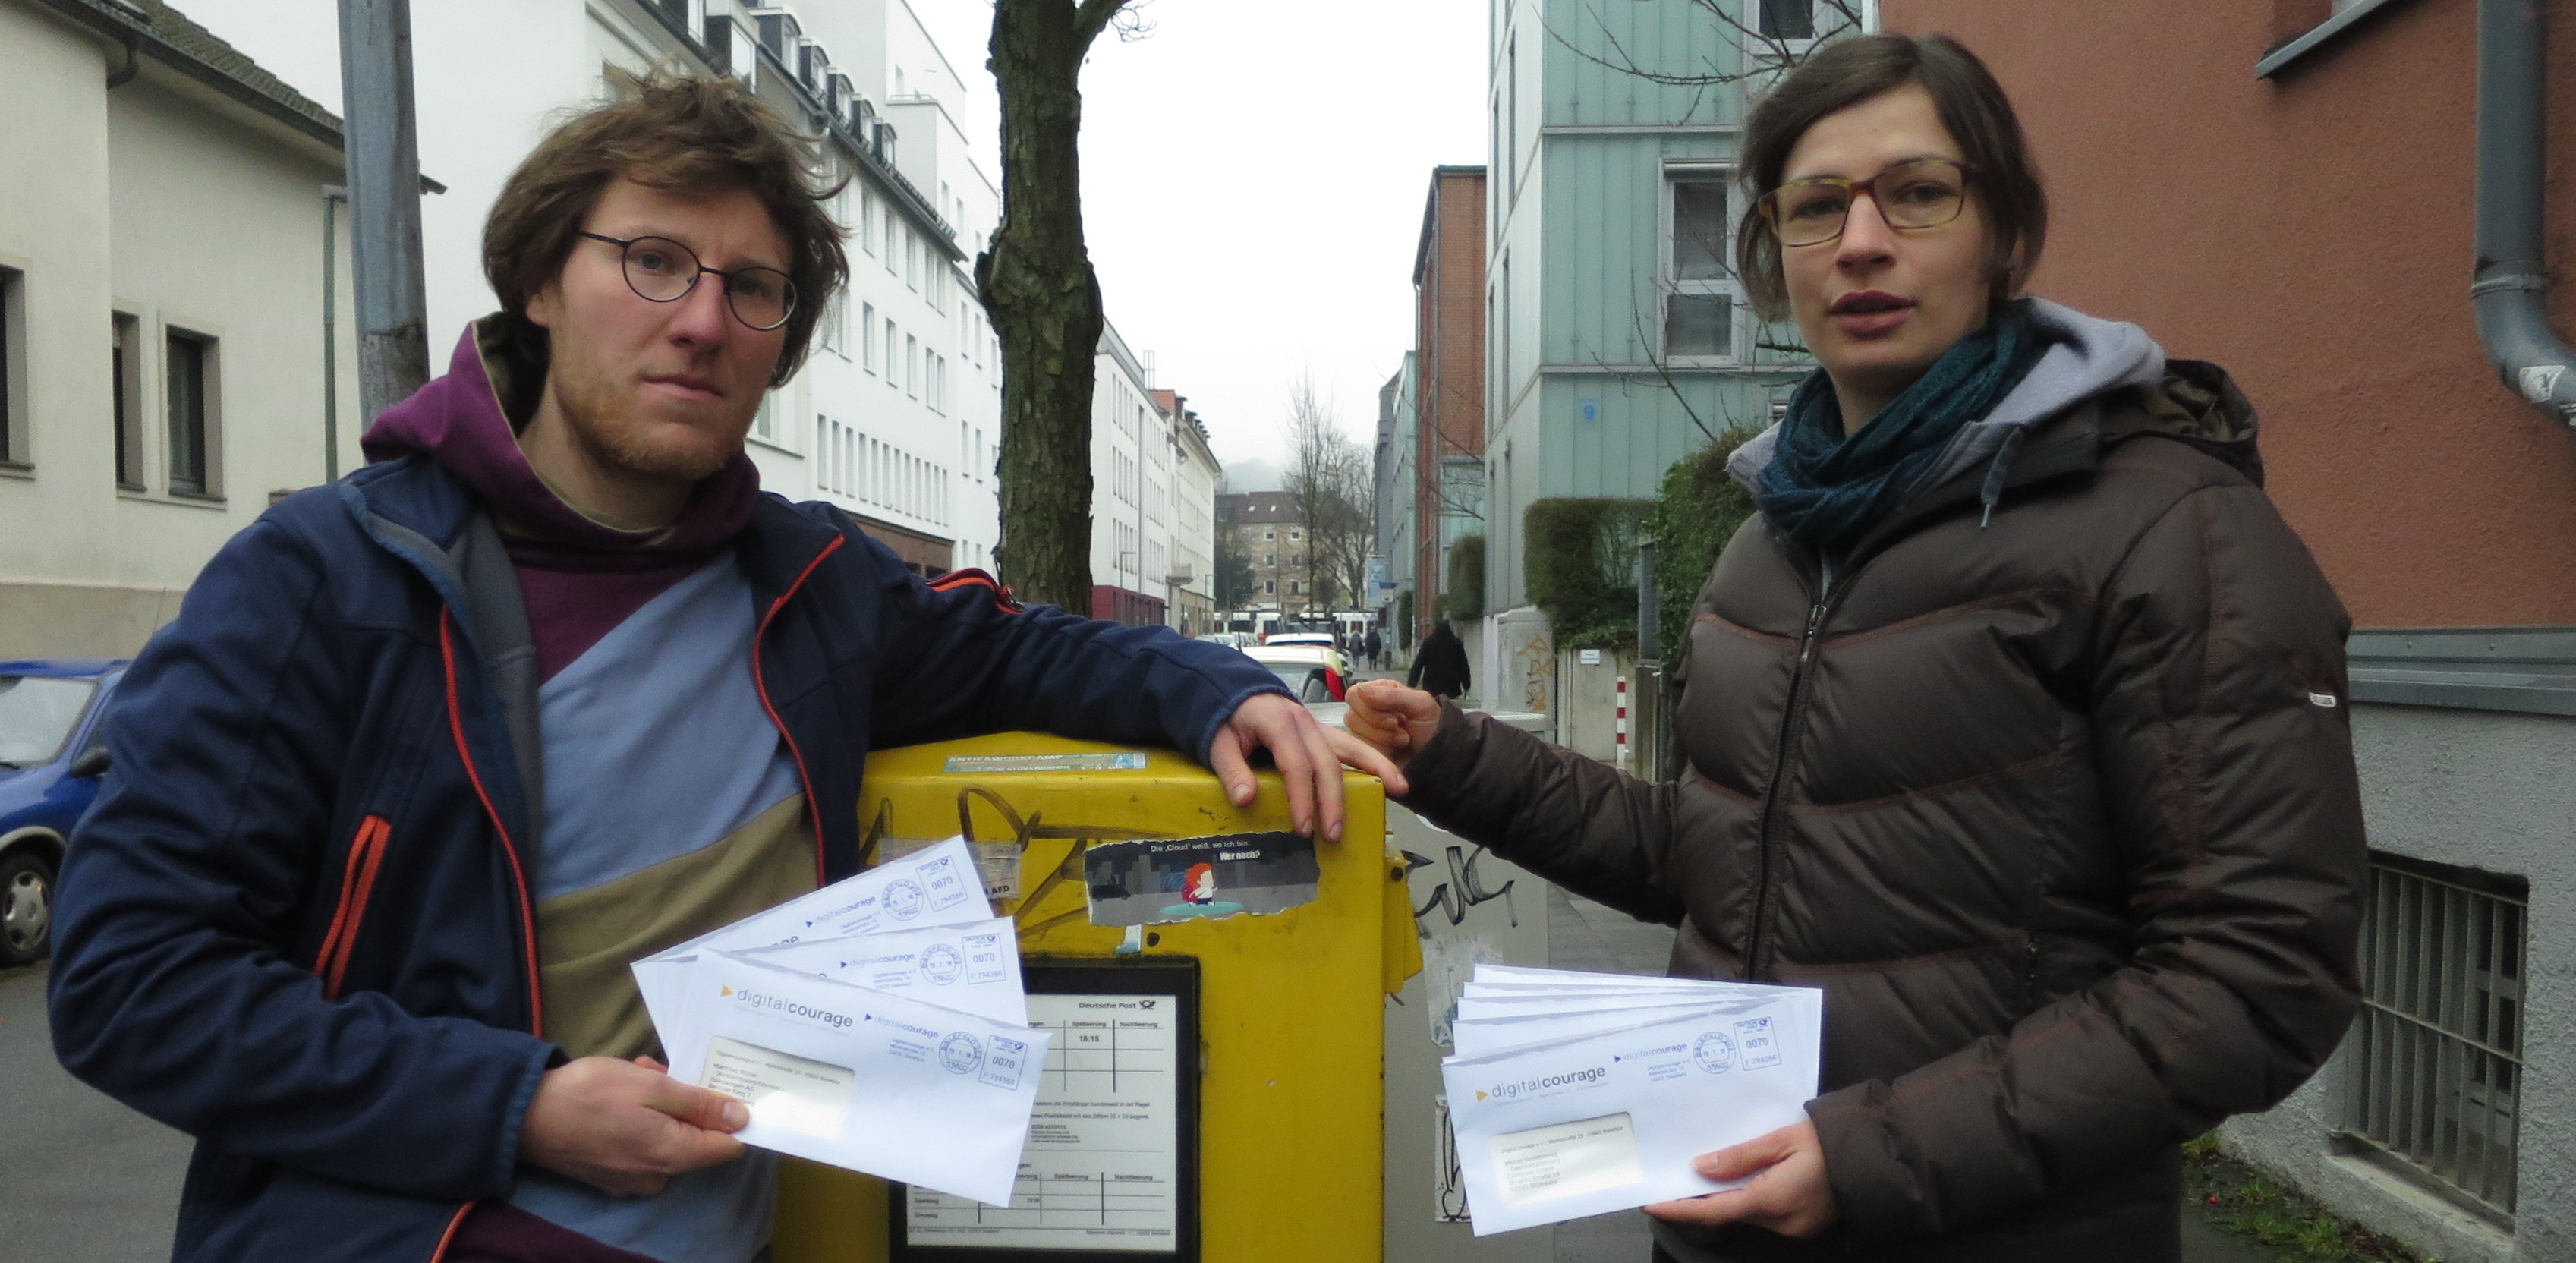 Kerstin und Friedemann vor dem einwerfen der offenen Briefe an Beteiligte von „Schutzranzen“.